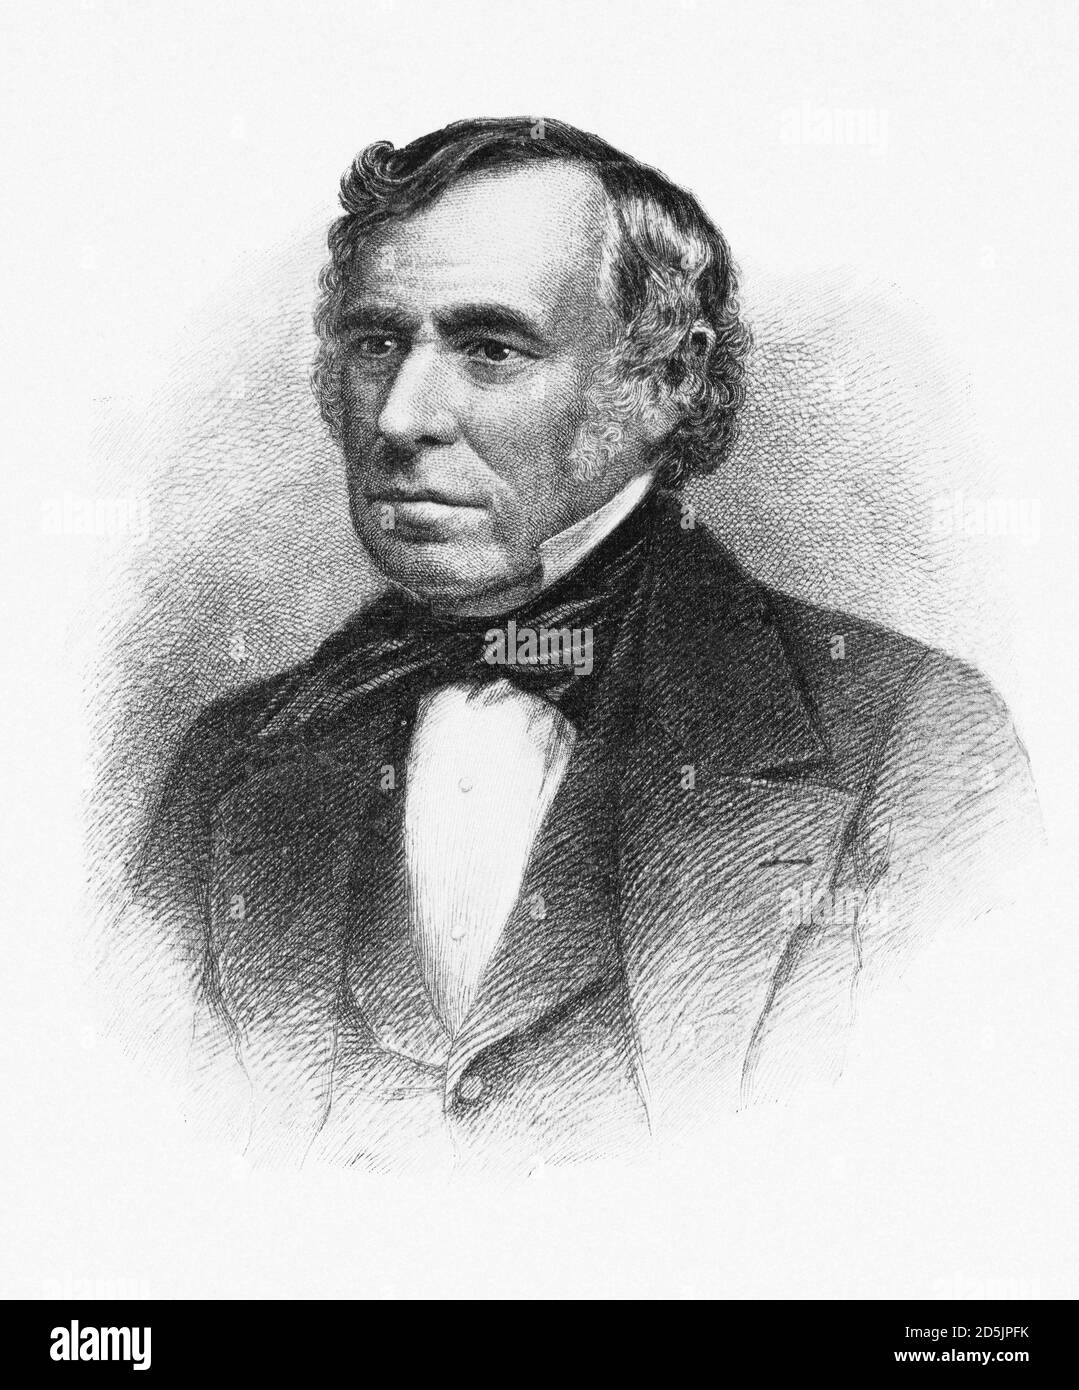 Portrait du président Zachary Taylor. Zachary Taylor (1784 – 1850) a été le 12e président des États-Unis, servant de mars 1849 jusqu'à son deat Banque D'Images